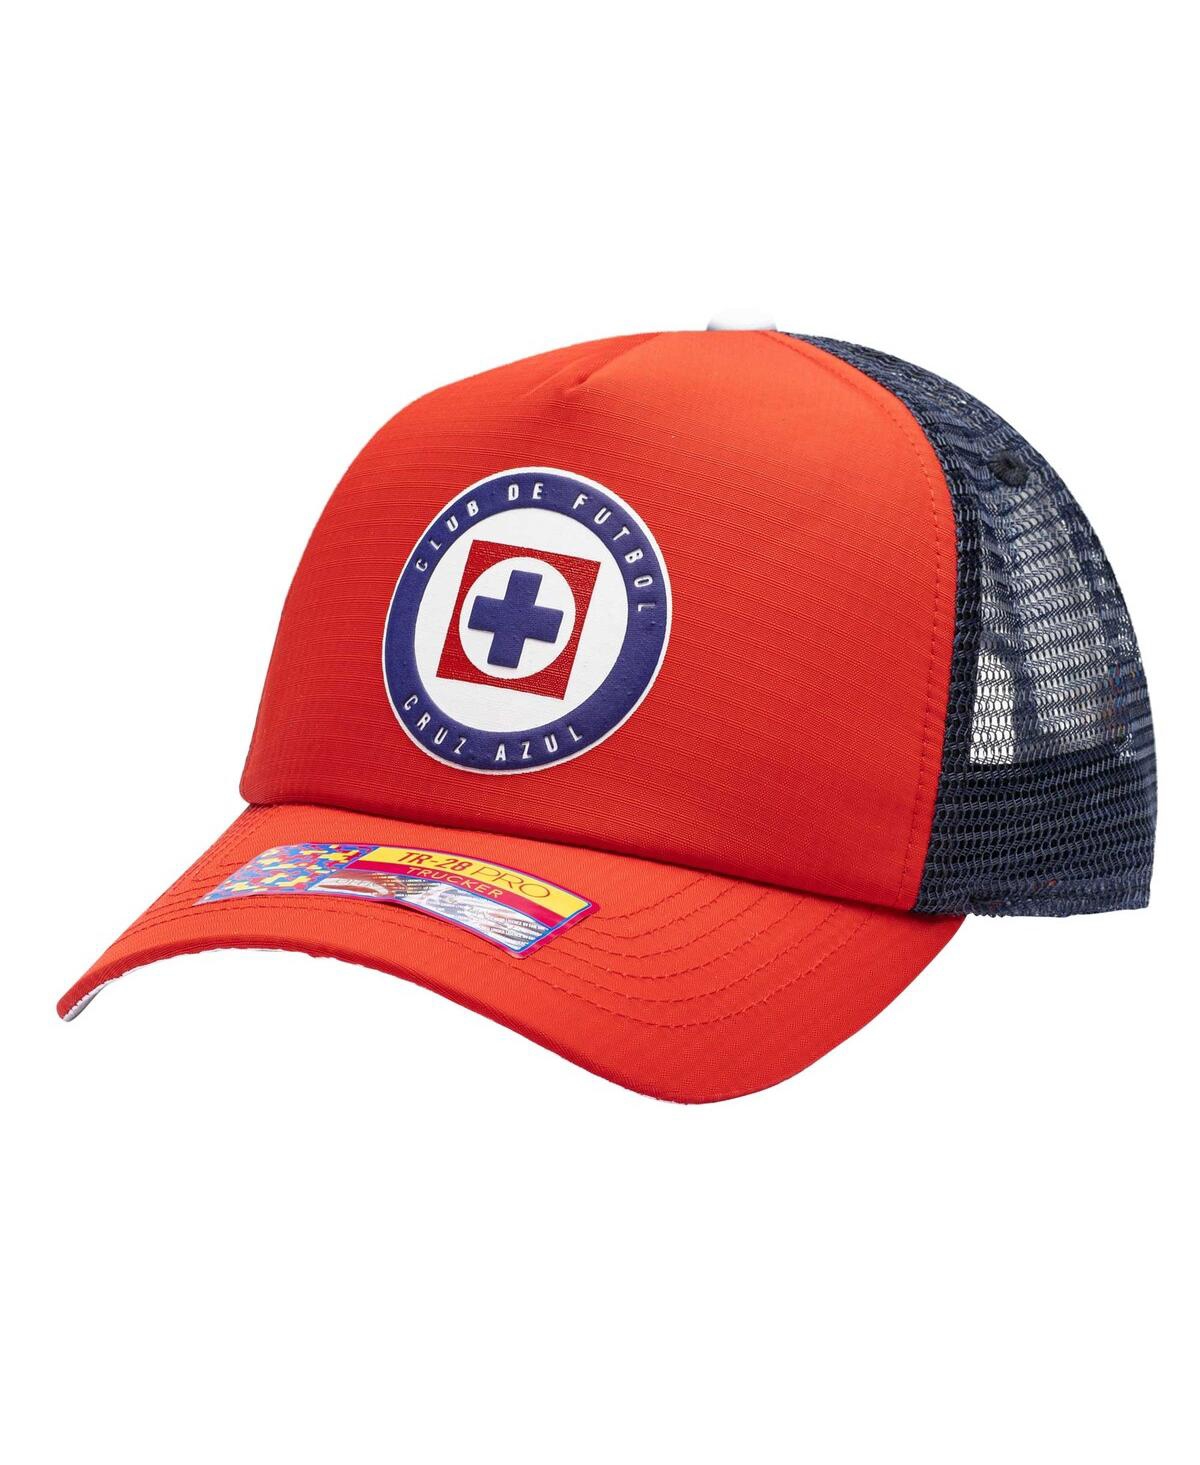 Shop Fan Ink Men's Red Cruz Azul Trucker Adjustable Hat